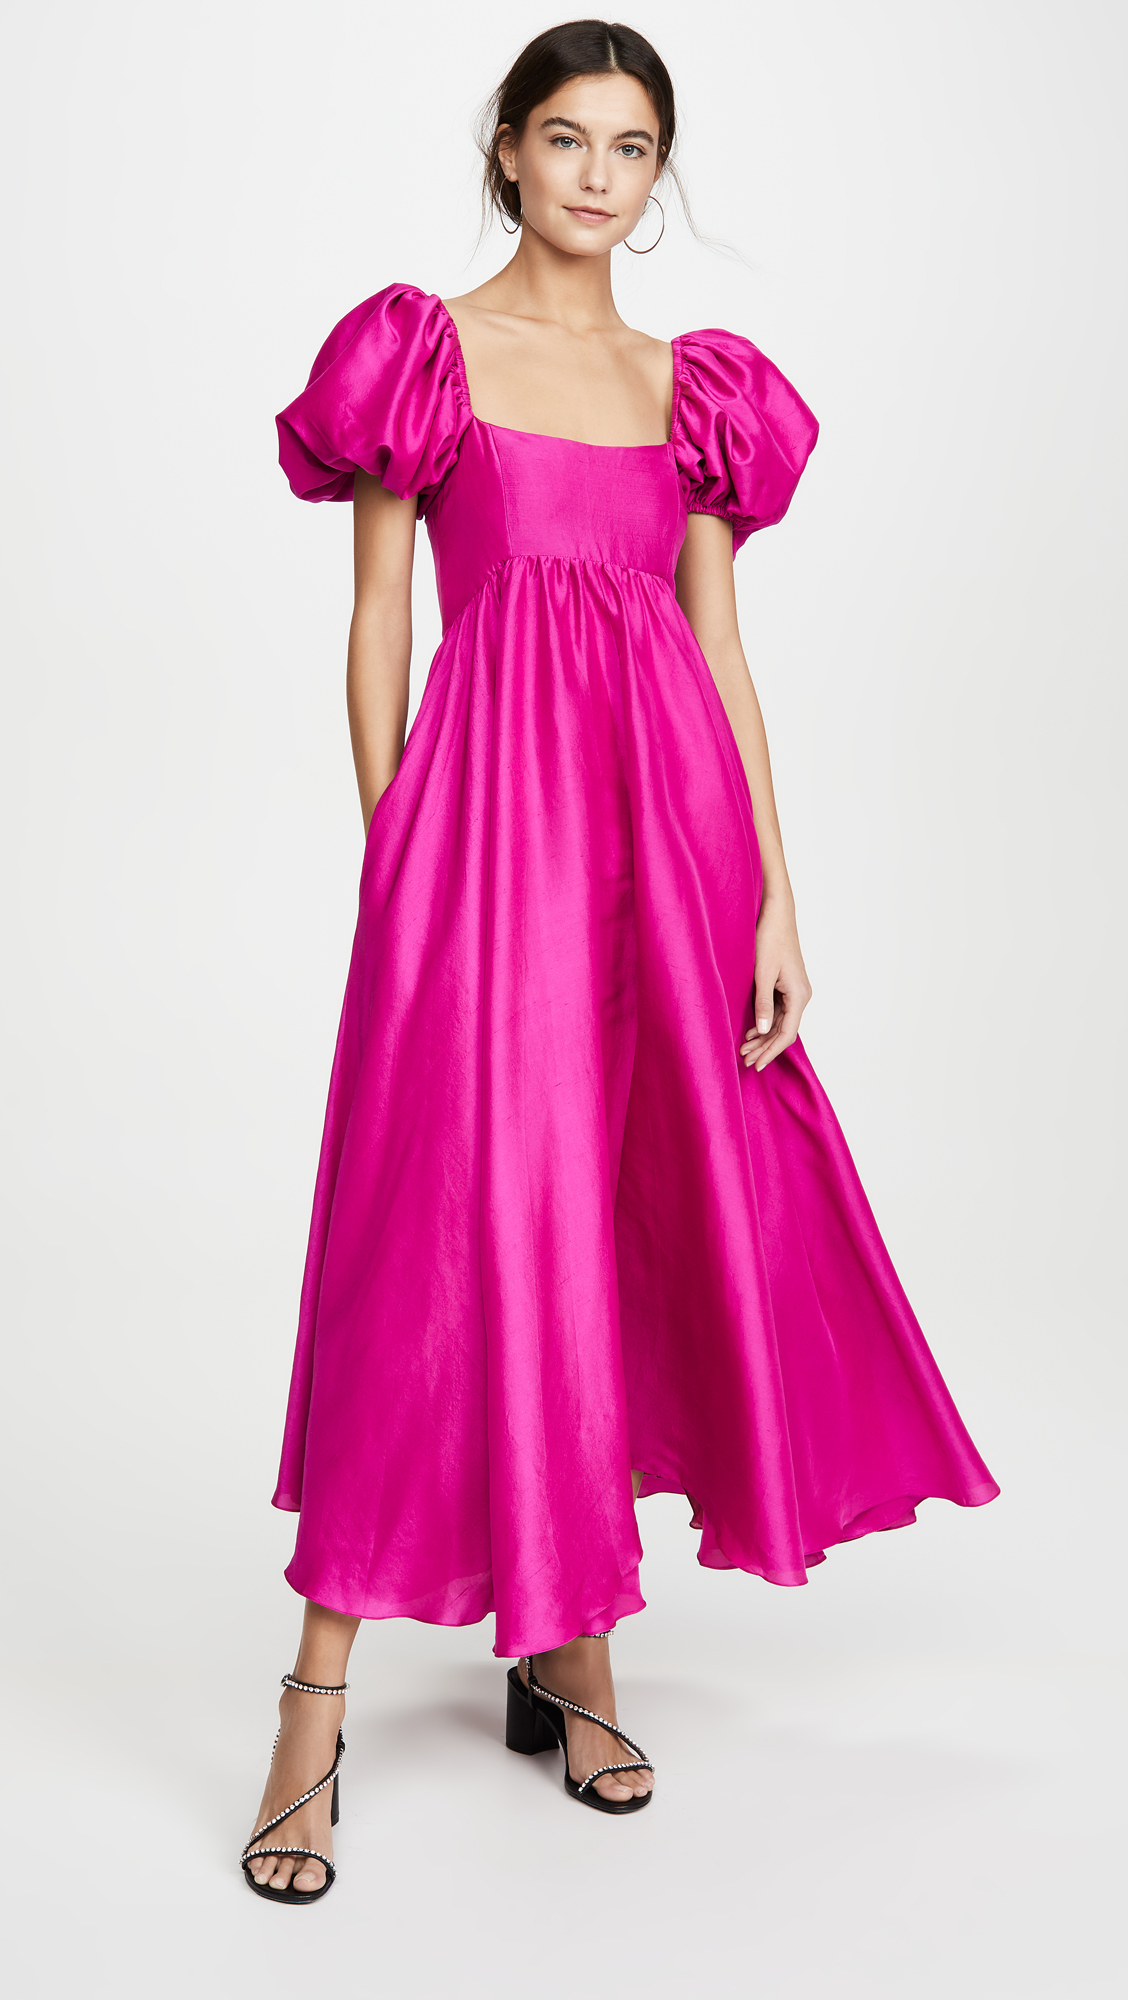 Azeeza Rory Puff Sleeve Wedding Dress Best Pink Wedding Dresses for 2021 2022 Brides Bridal Musings 1 - 30 chiếc áo dài cưới màu hồng dành cho cô dâu yêu thích sắc màu